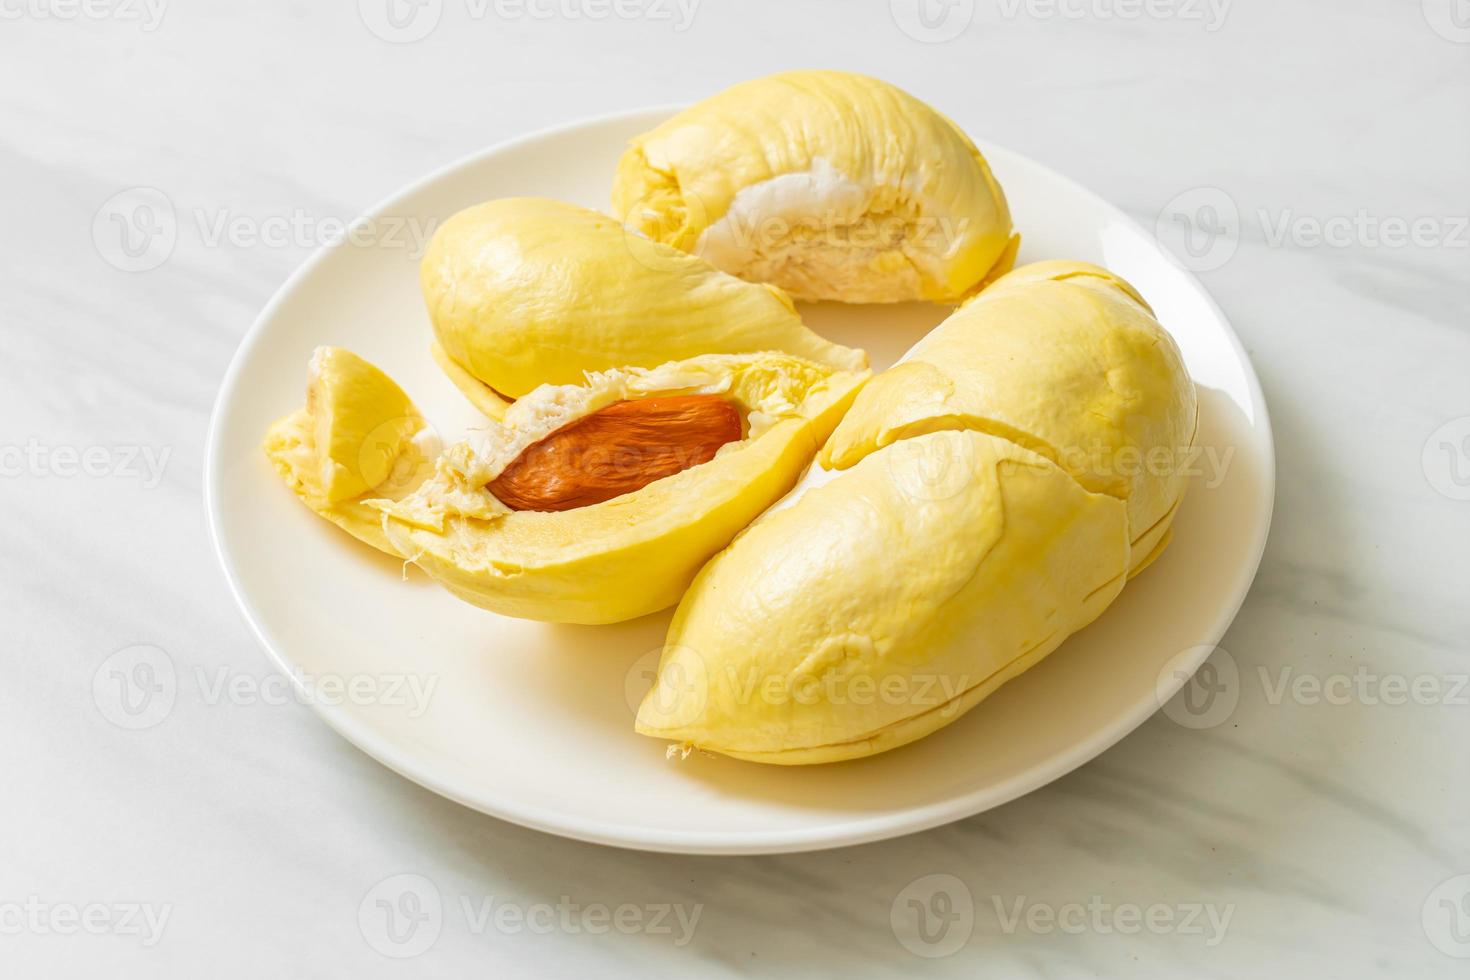 durian gerijpt en vers, durian schil op witte plaat foto